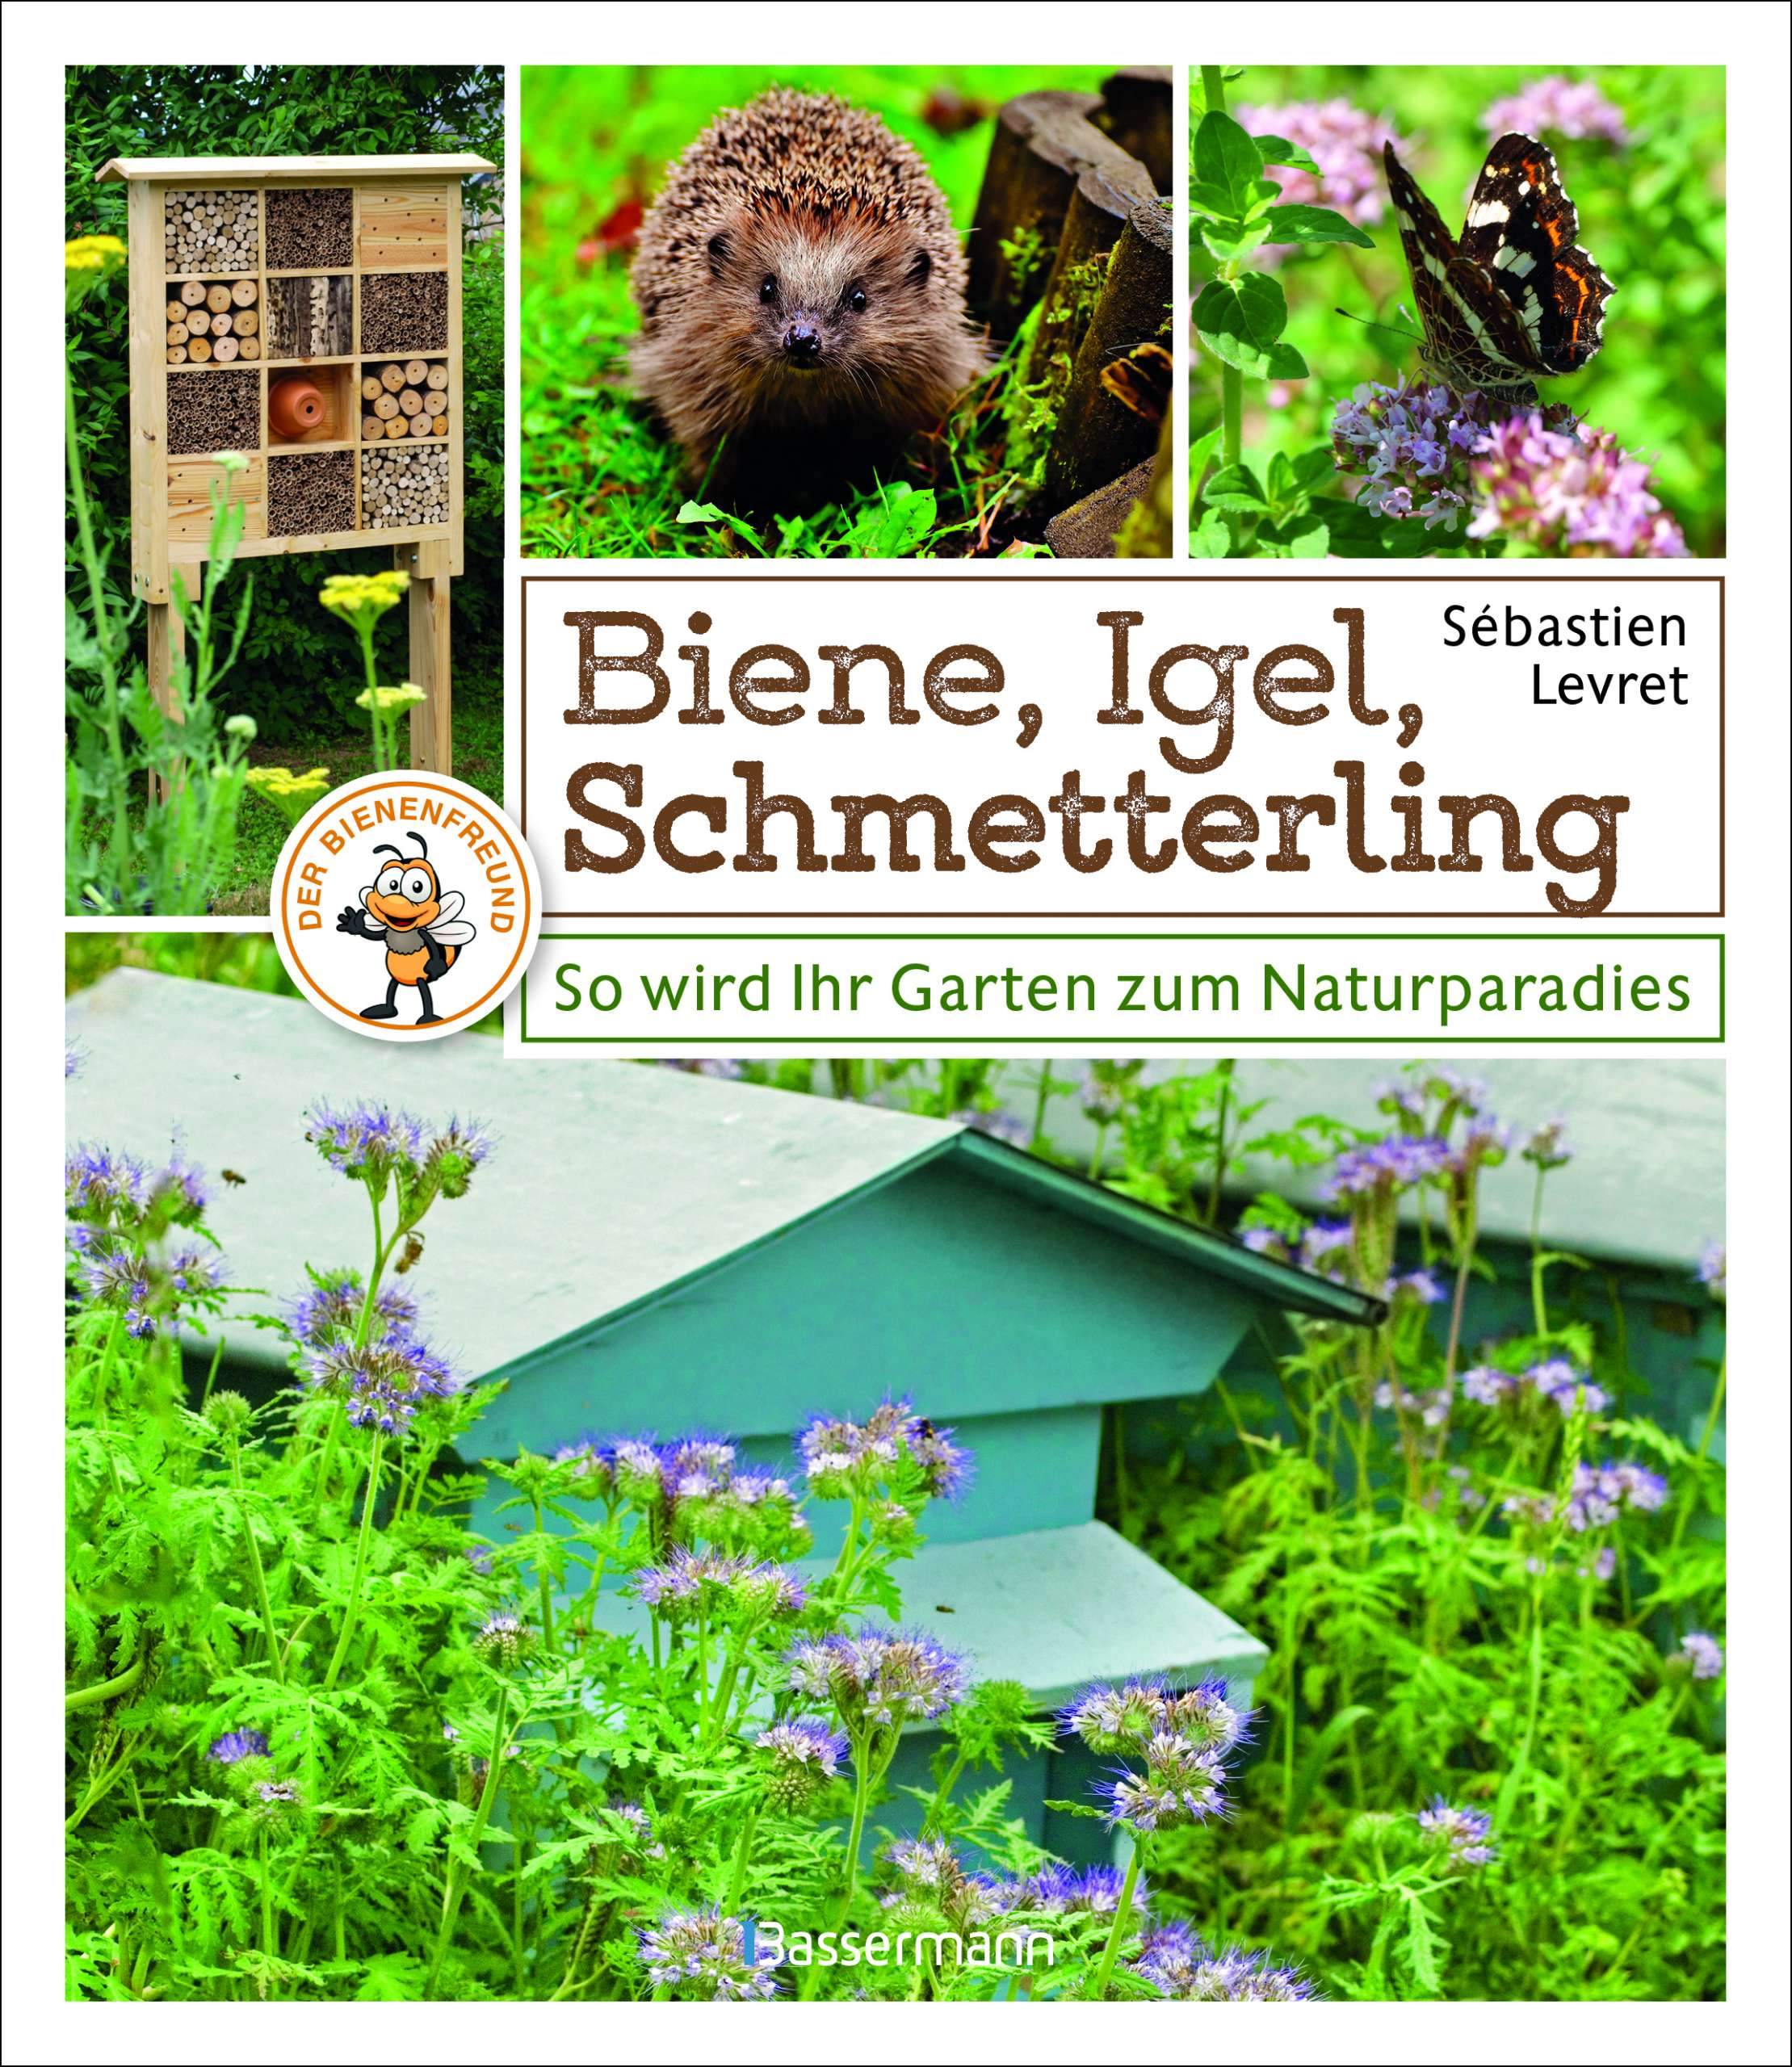 Biene Igel Schmetterling Cover 1280x1280 2x